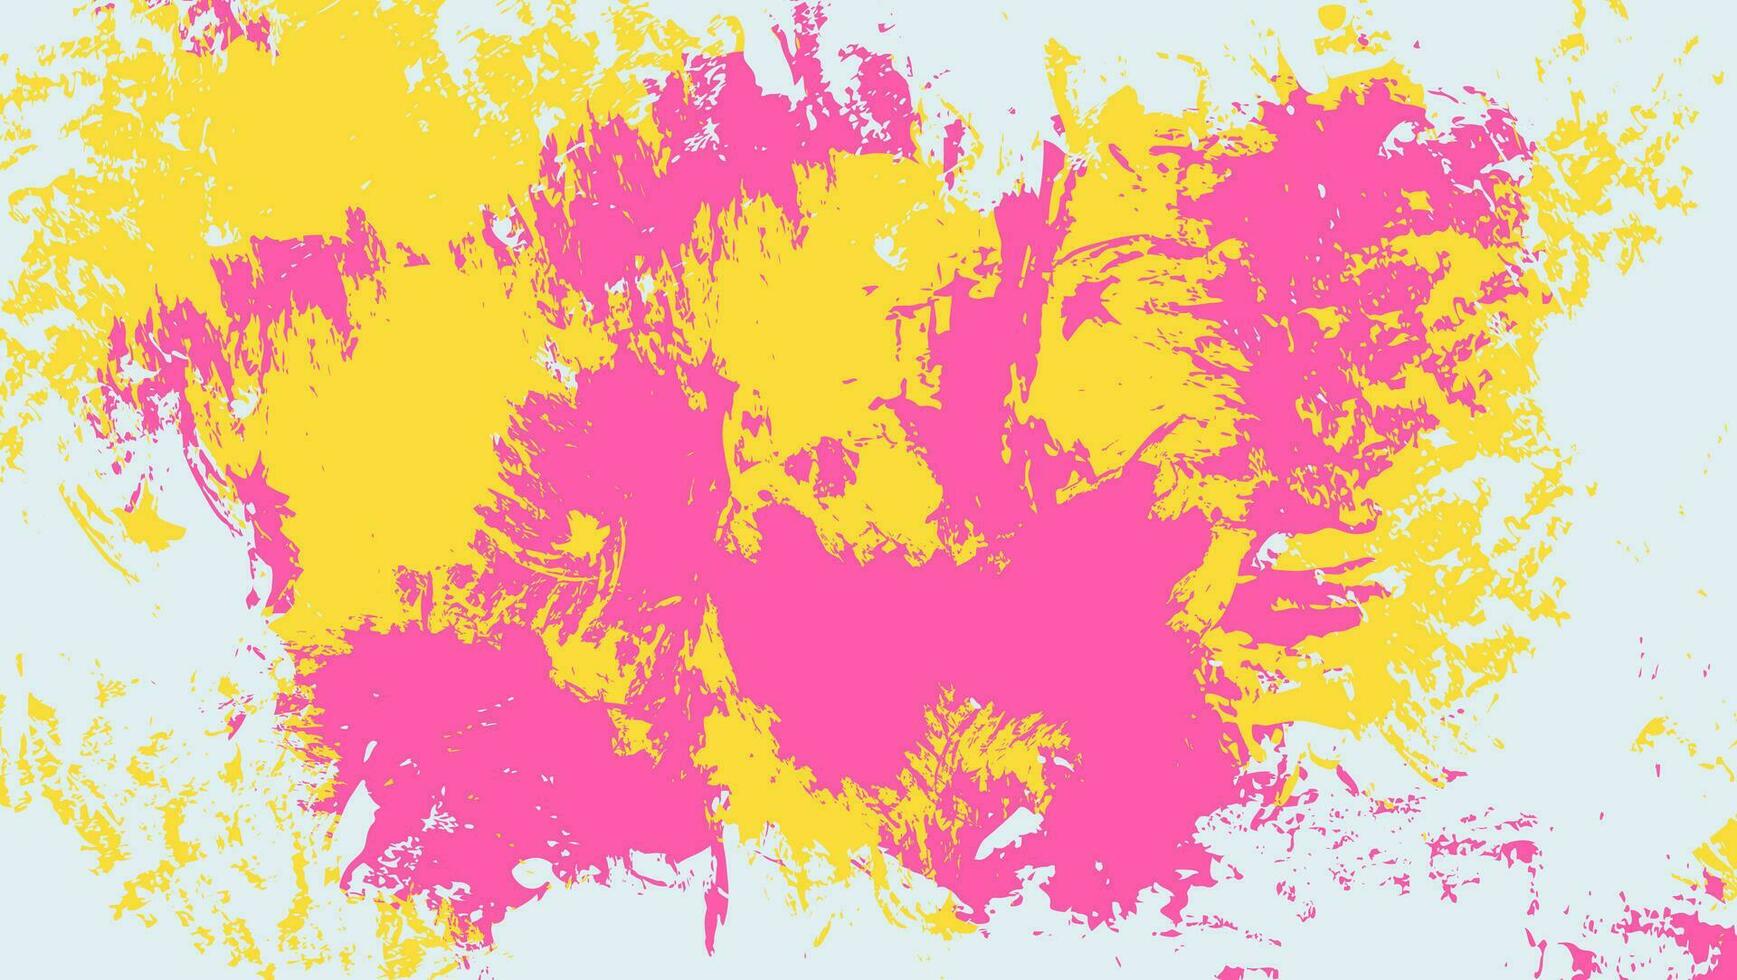 abstrakt hell bunt Spritzer Farbe Grunge Textur Hintergrund vektor